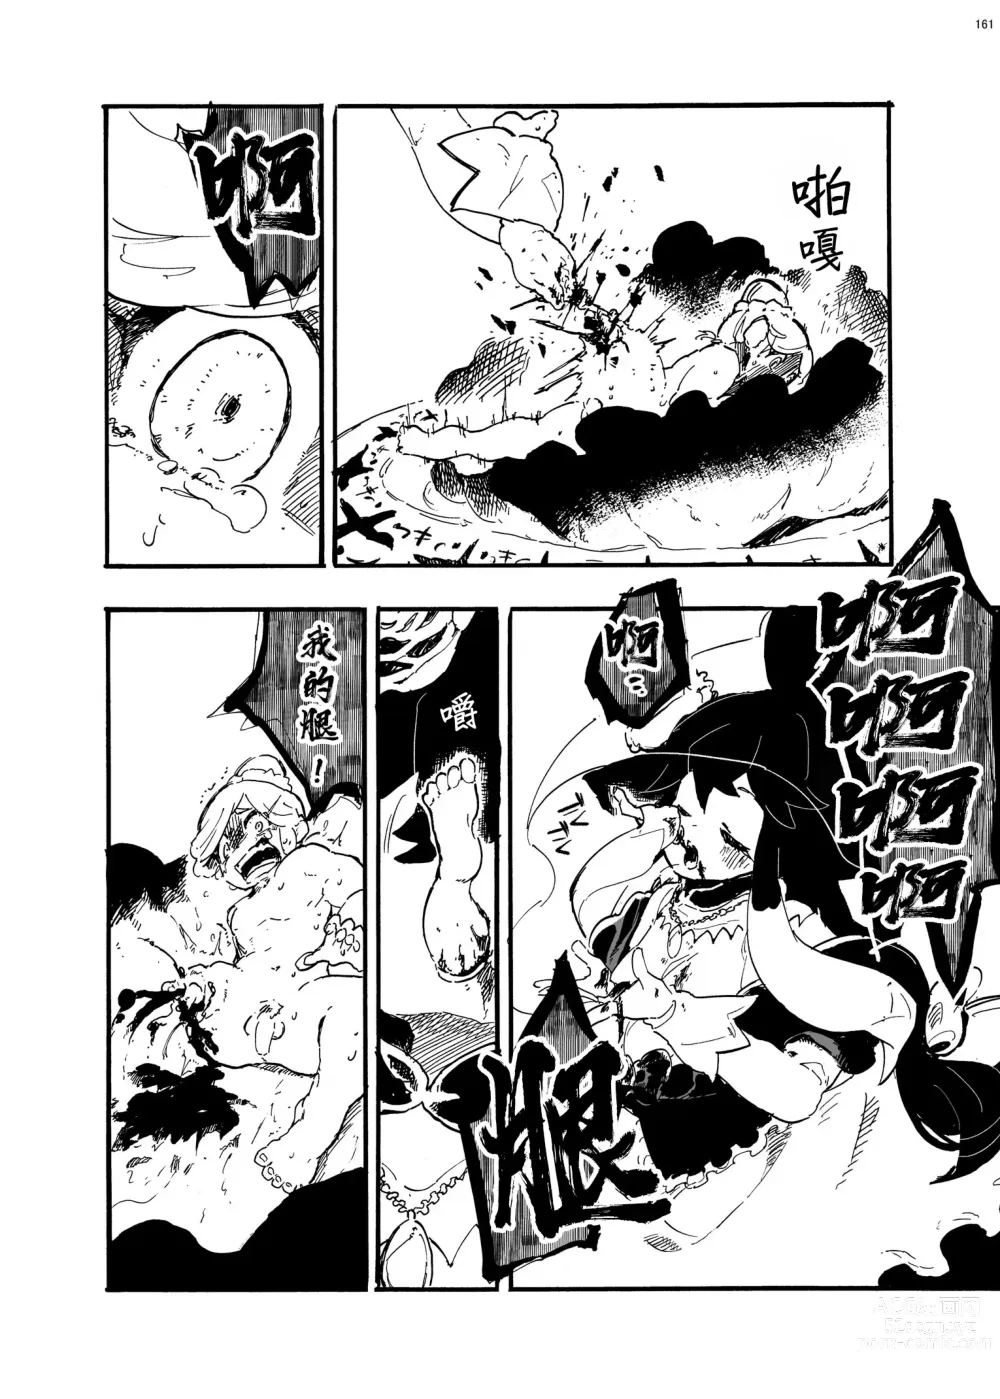 Page 4 of manga 外星人D和研究員U的遭遇